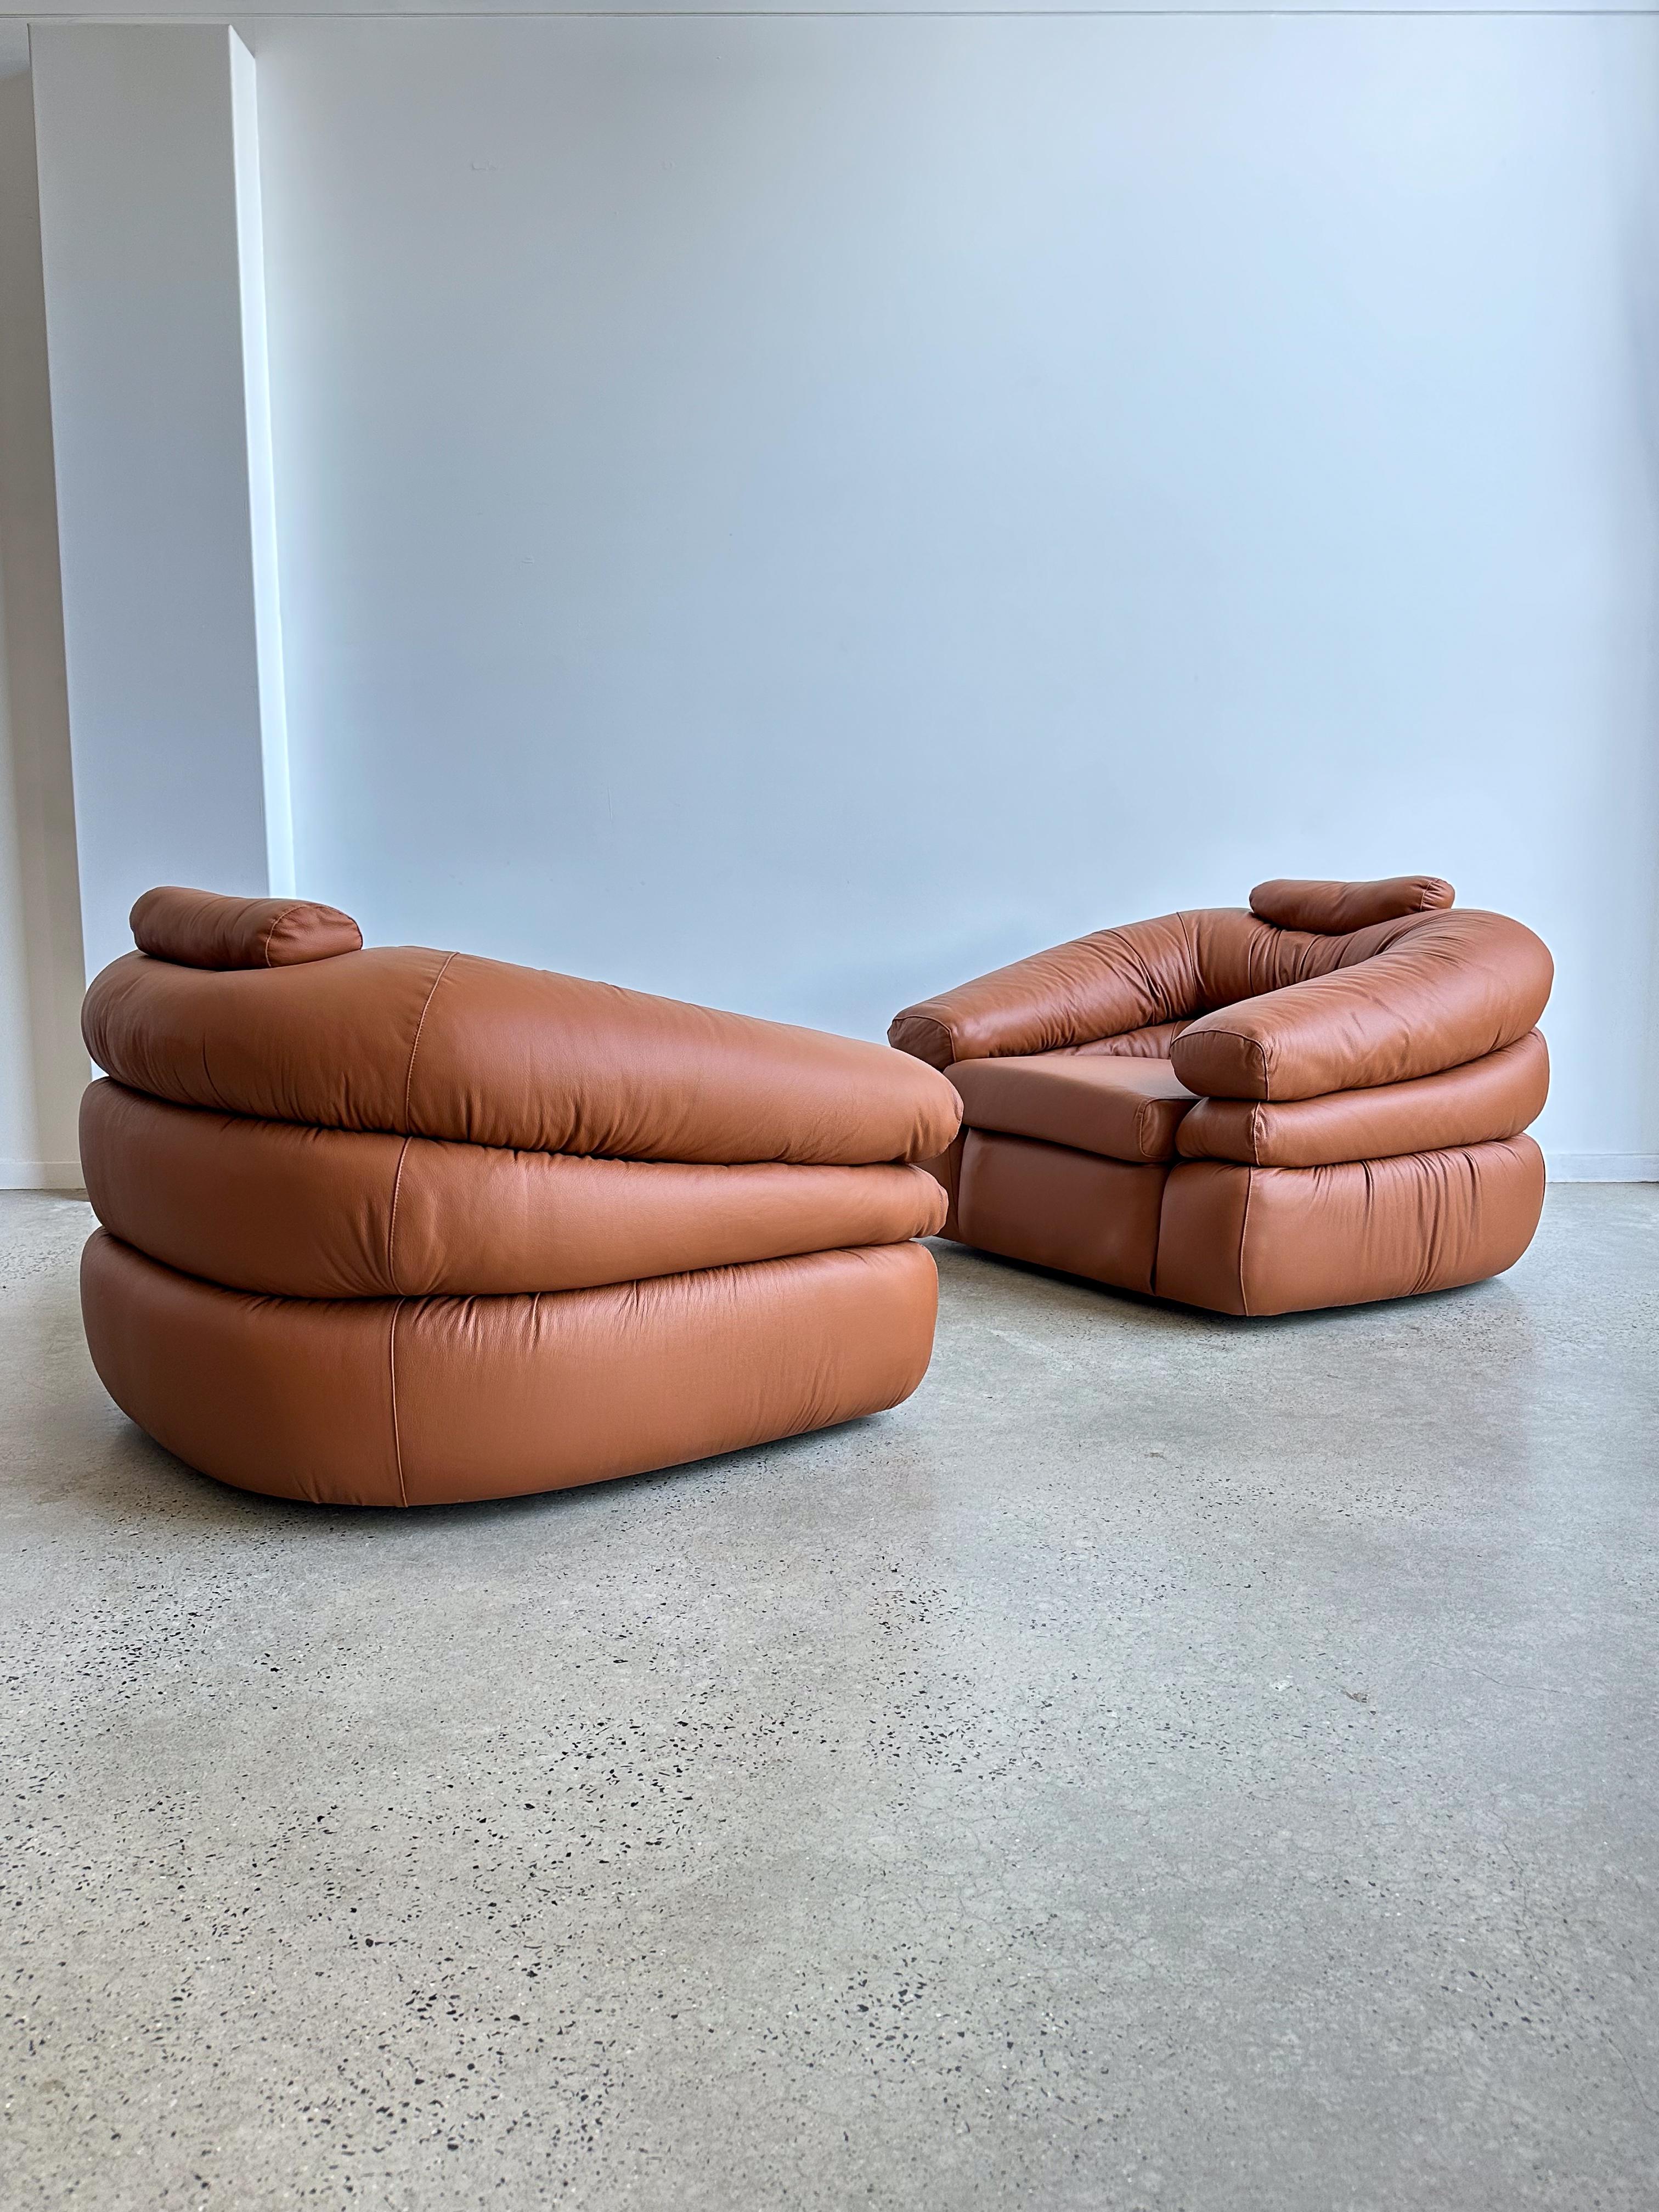 Ces deux fauteuils en cuir ont été conçus en 1968 par l'équipe de Design/One, Donato d'Urbino et Paolo Lomazzi. Ils ont créé l'un des objets les plus emblématiques de l'histoire du Design/One italien. Ce modèle appelé 